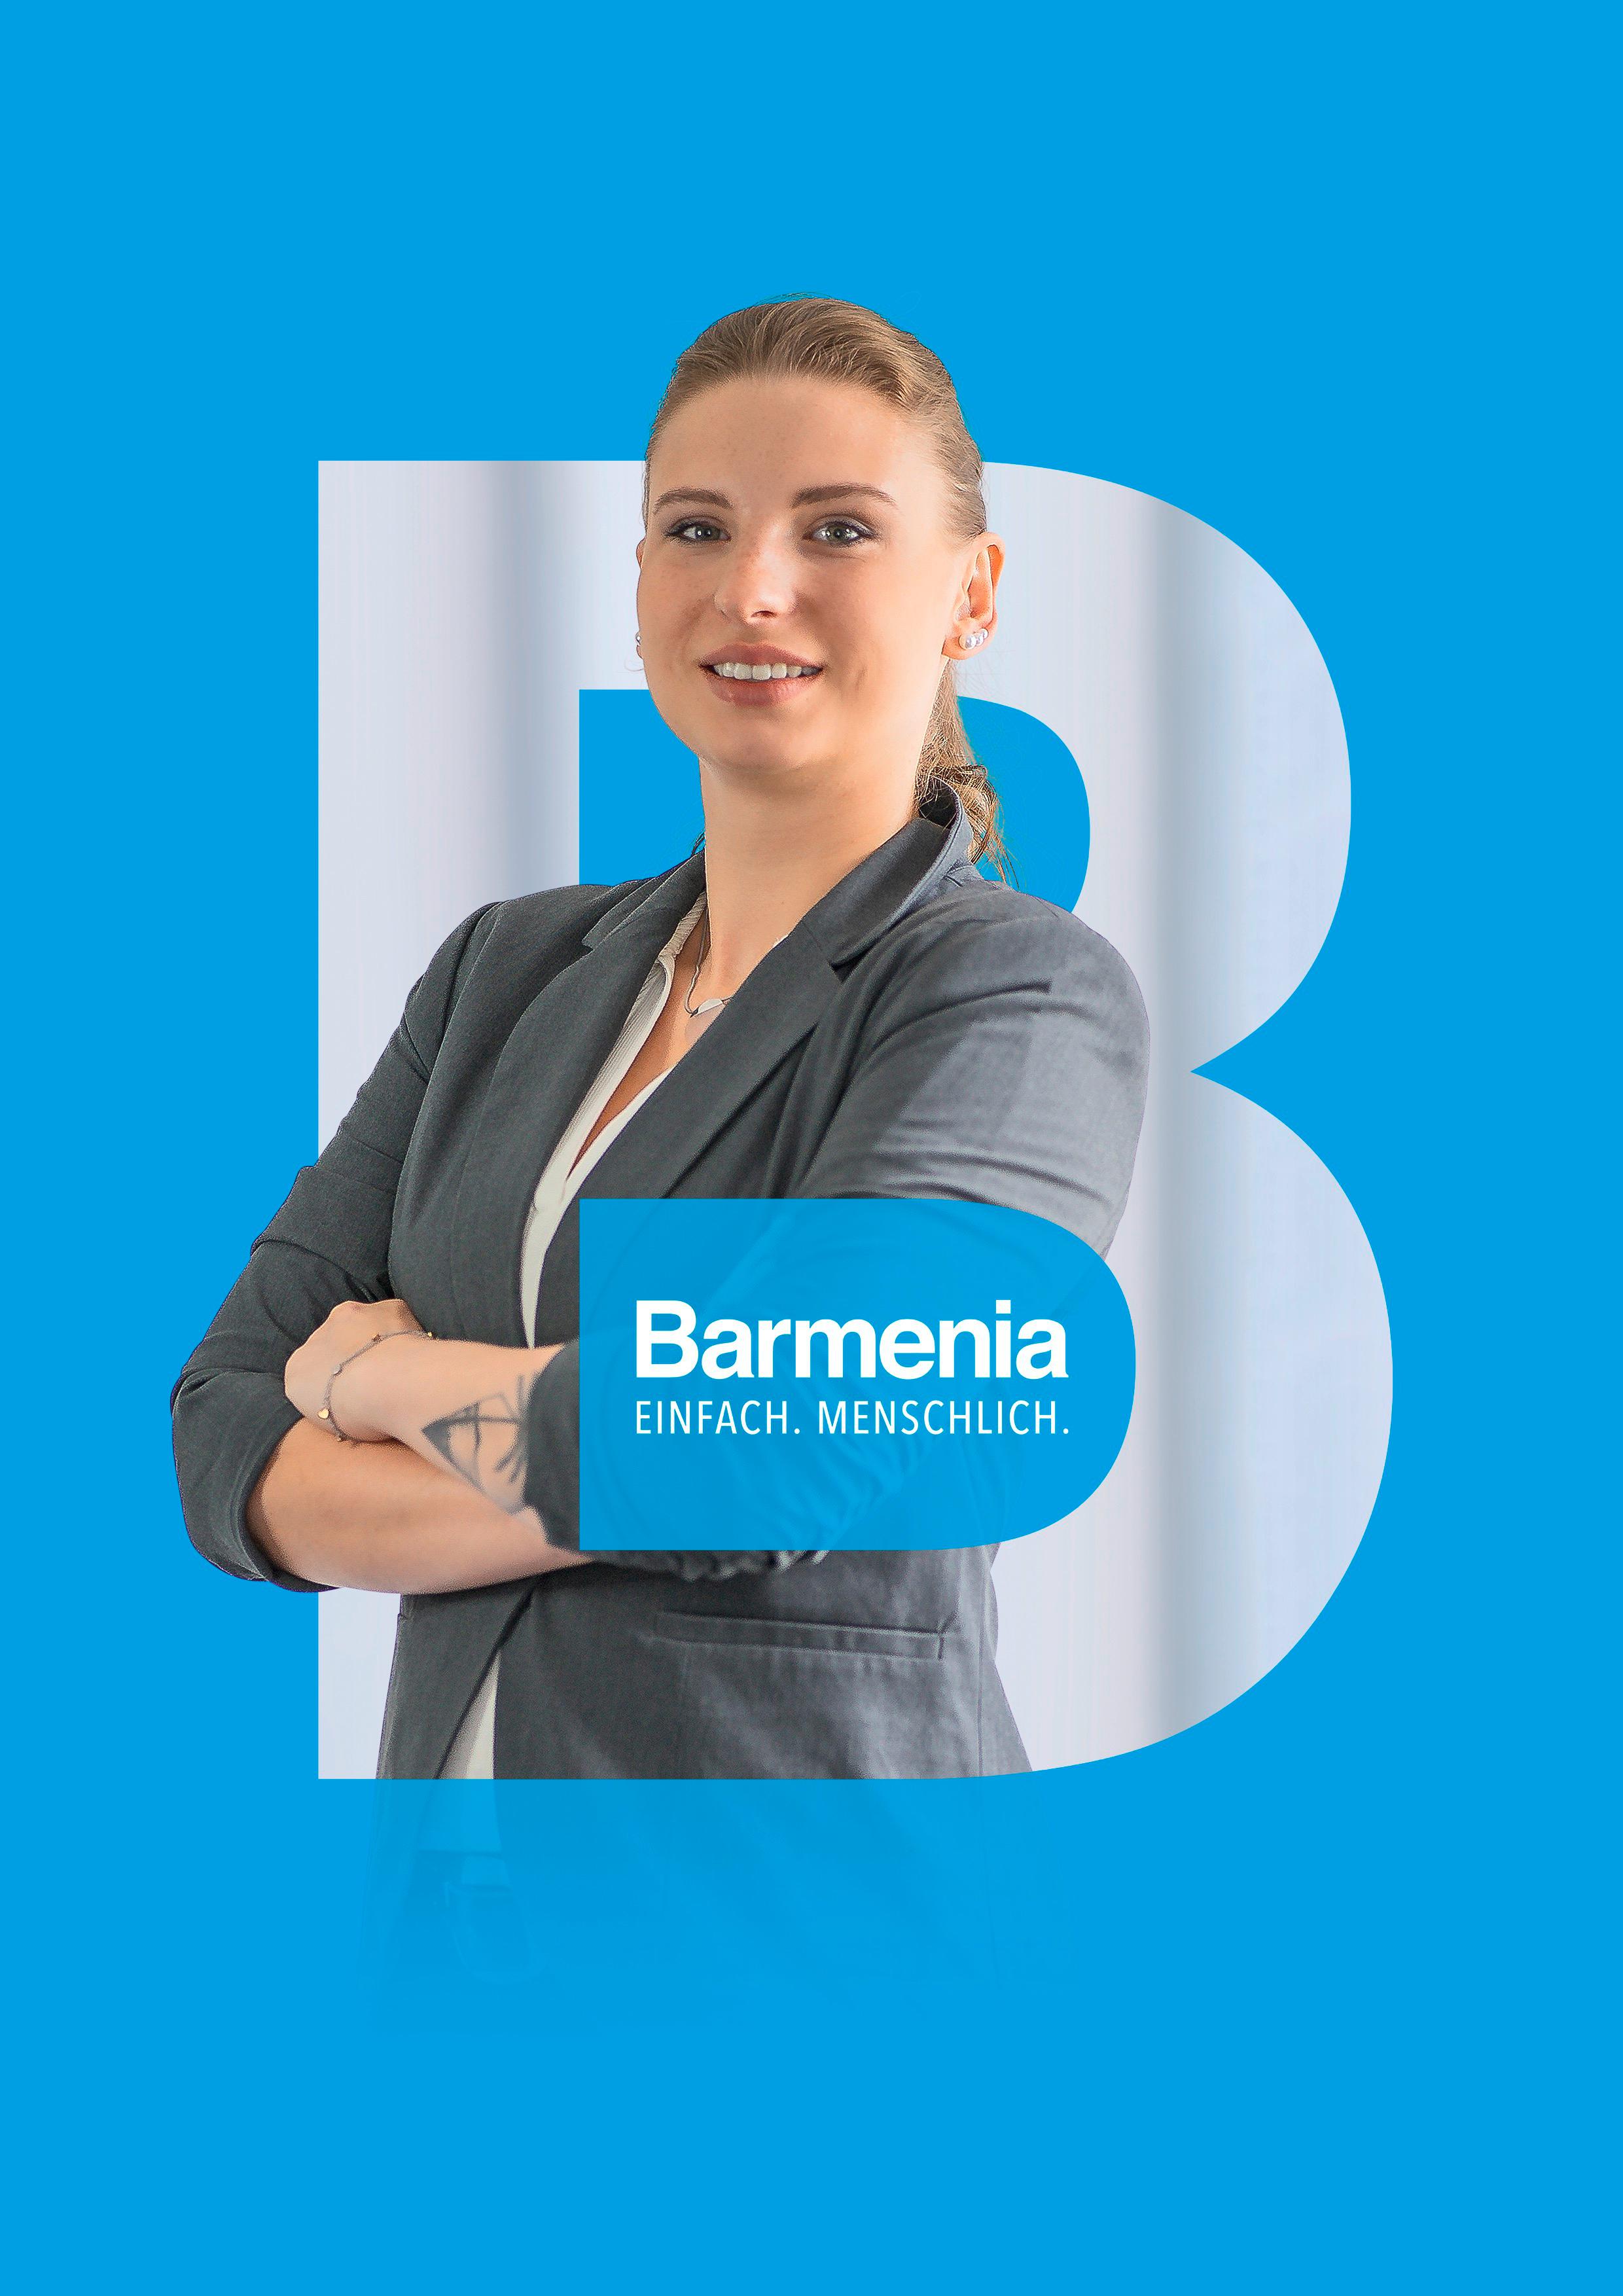 Alexandra Kath. Ihre Ansprechpartnerin für die Barmenia Versicherung in Kassel.